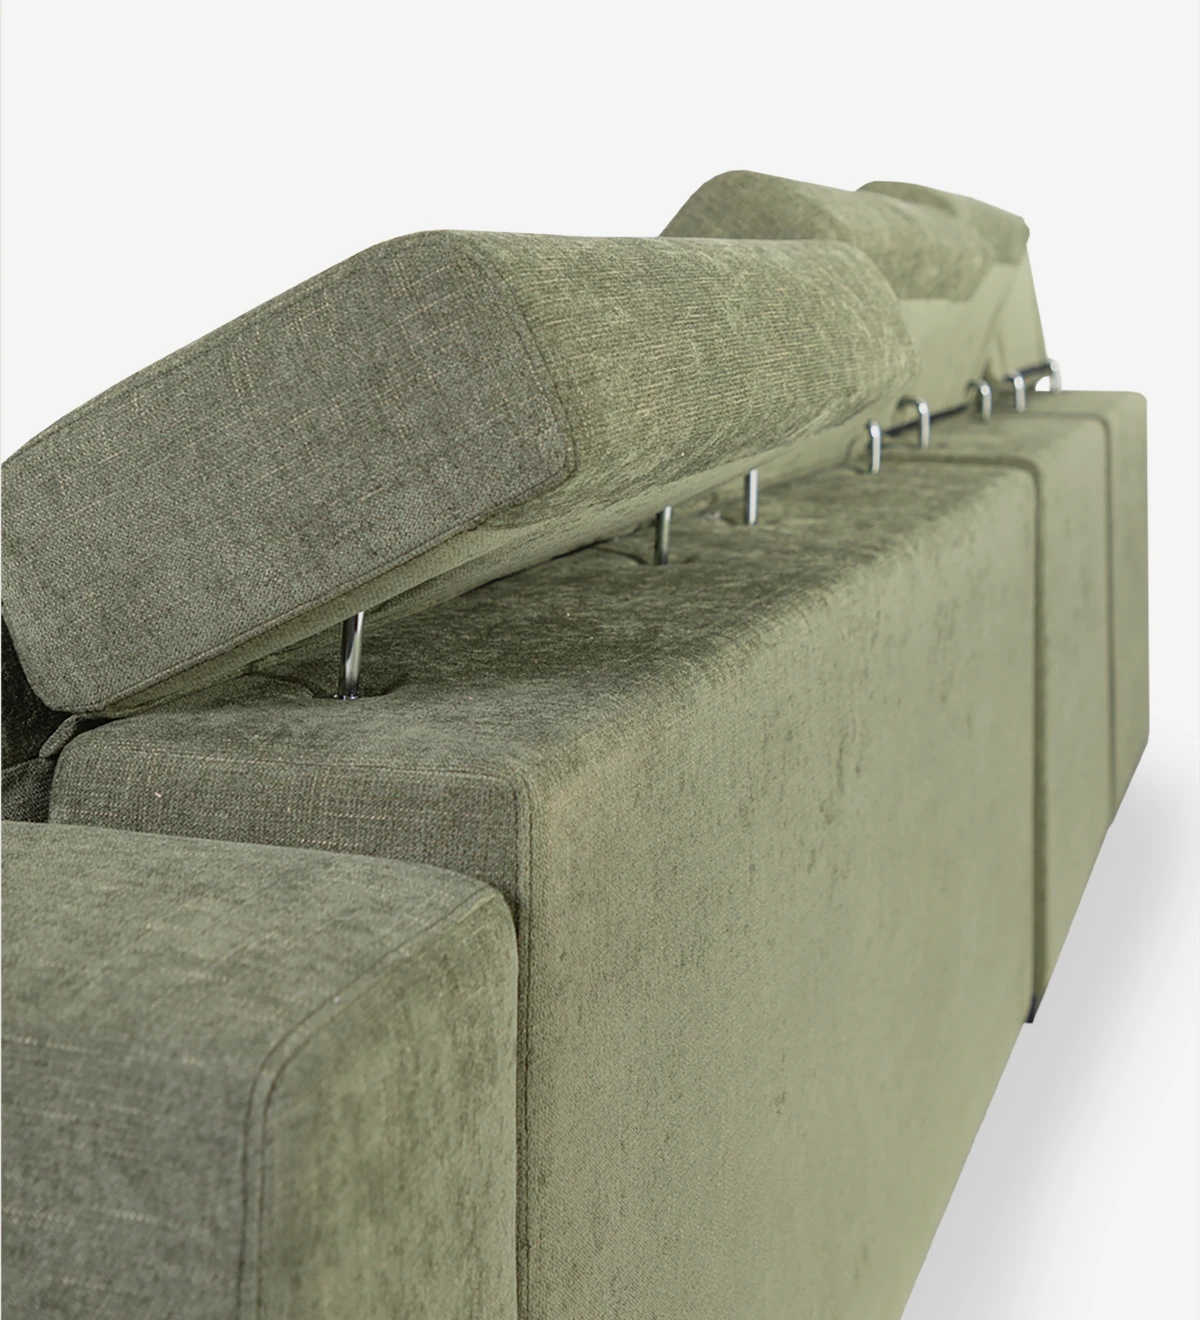 Canapé 3 places avec chaise longue réversible, revêtu de tissu, avec têtières inclinables, sièges coulissants et rangement sur la chaise longue.